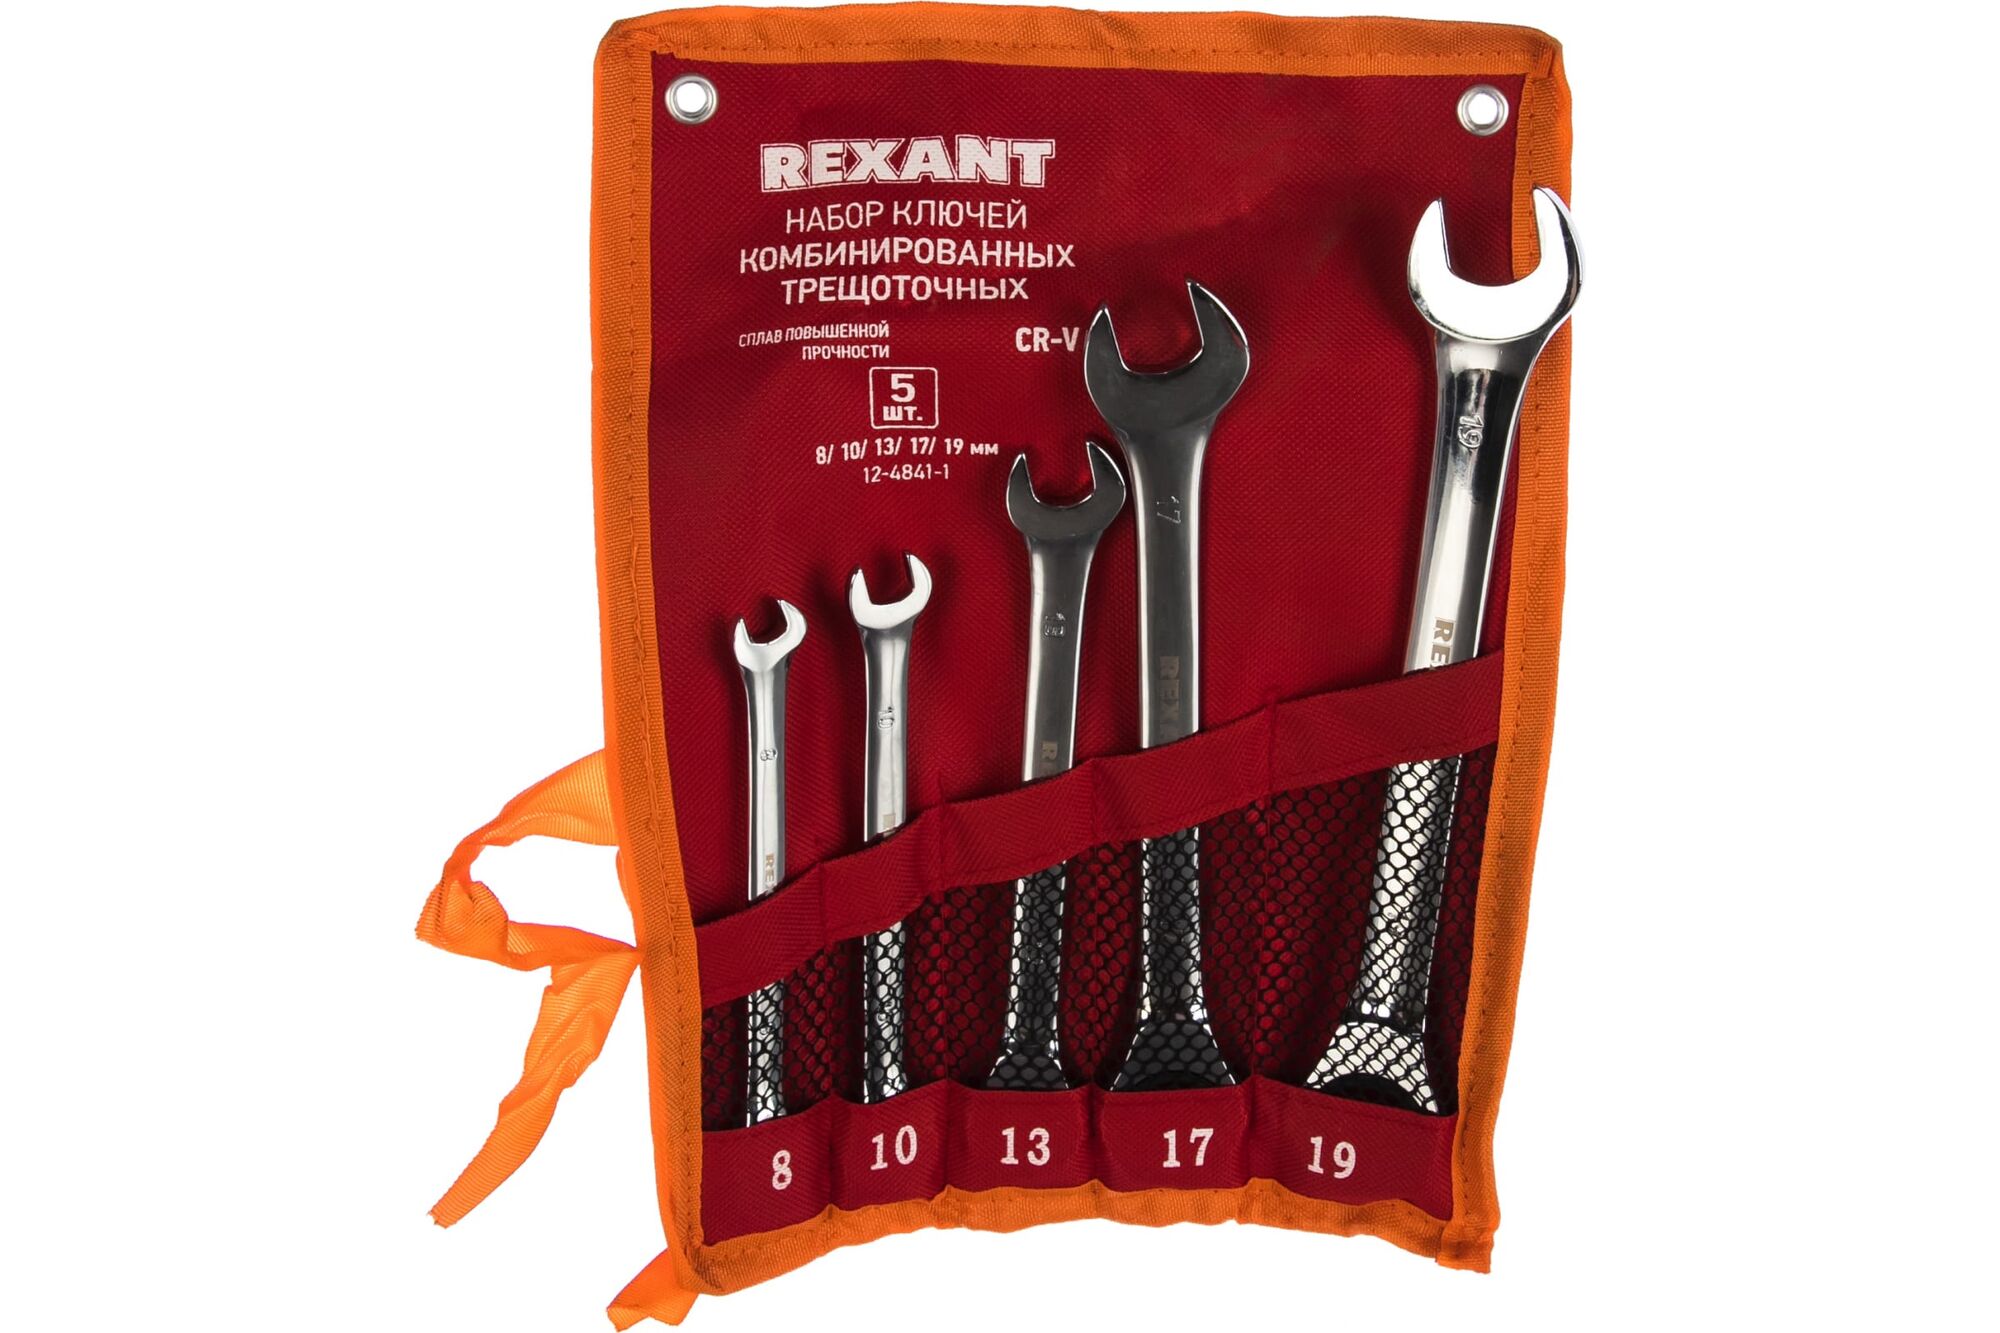 Набор комбинированных трещоточных ключей REXANT 8-19 мм, 5 шт 12-4841-1